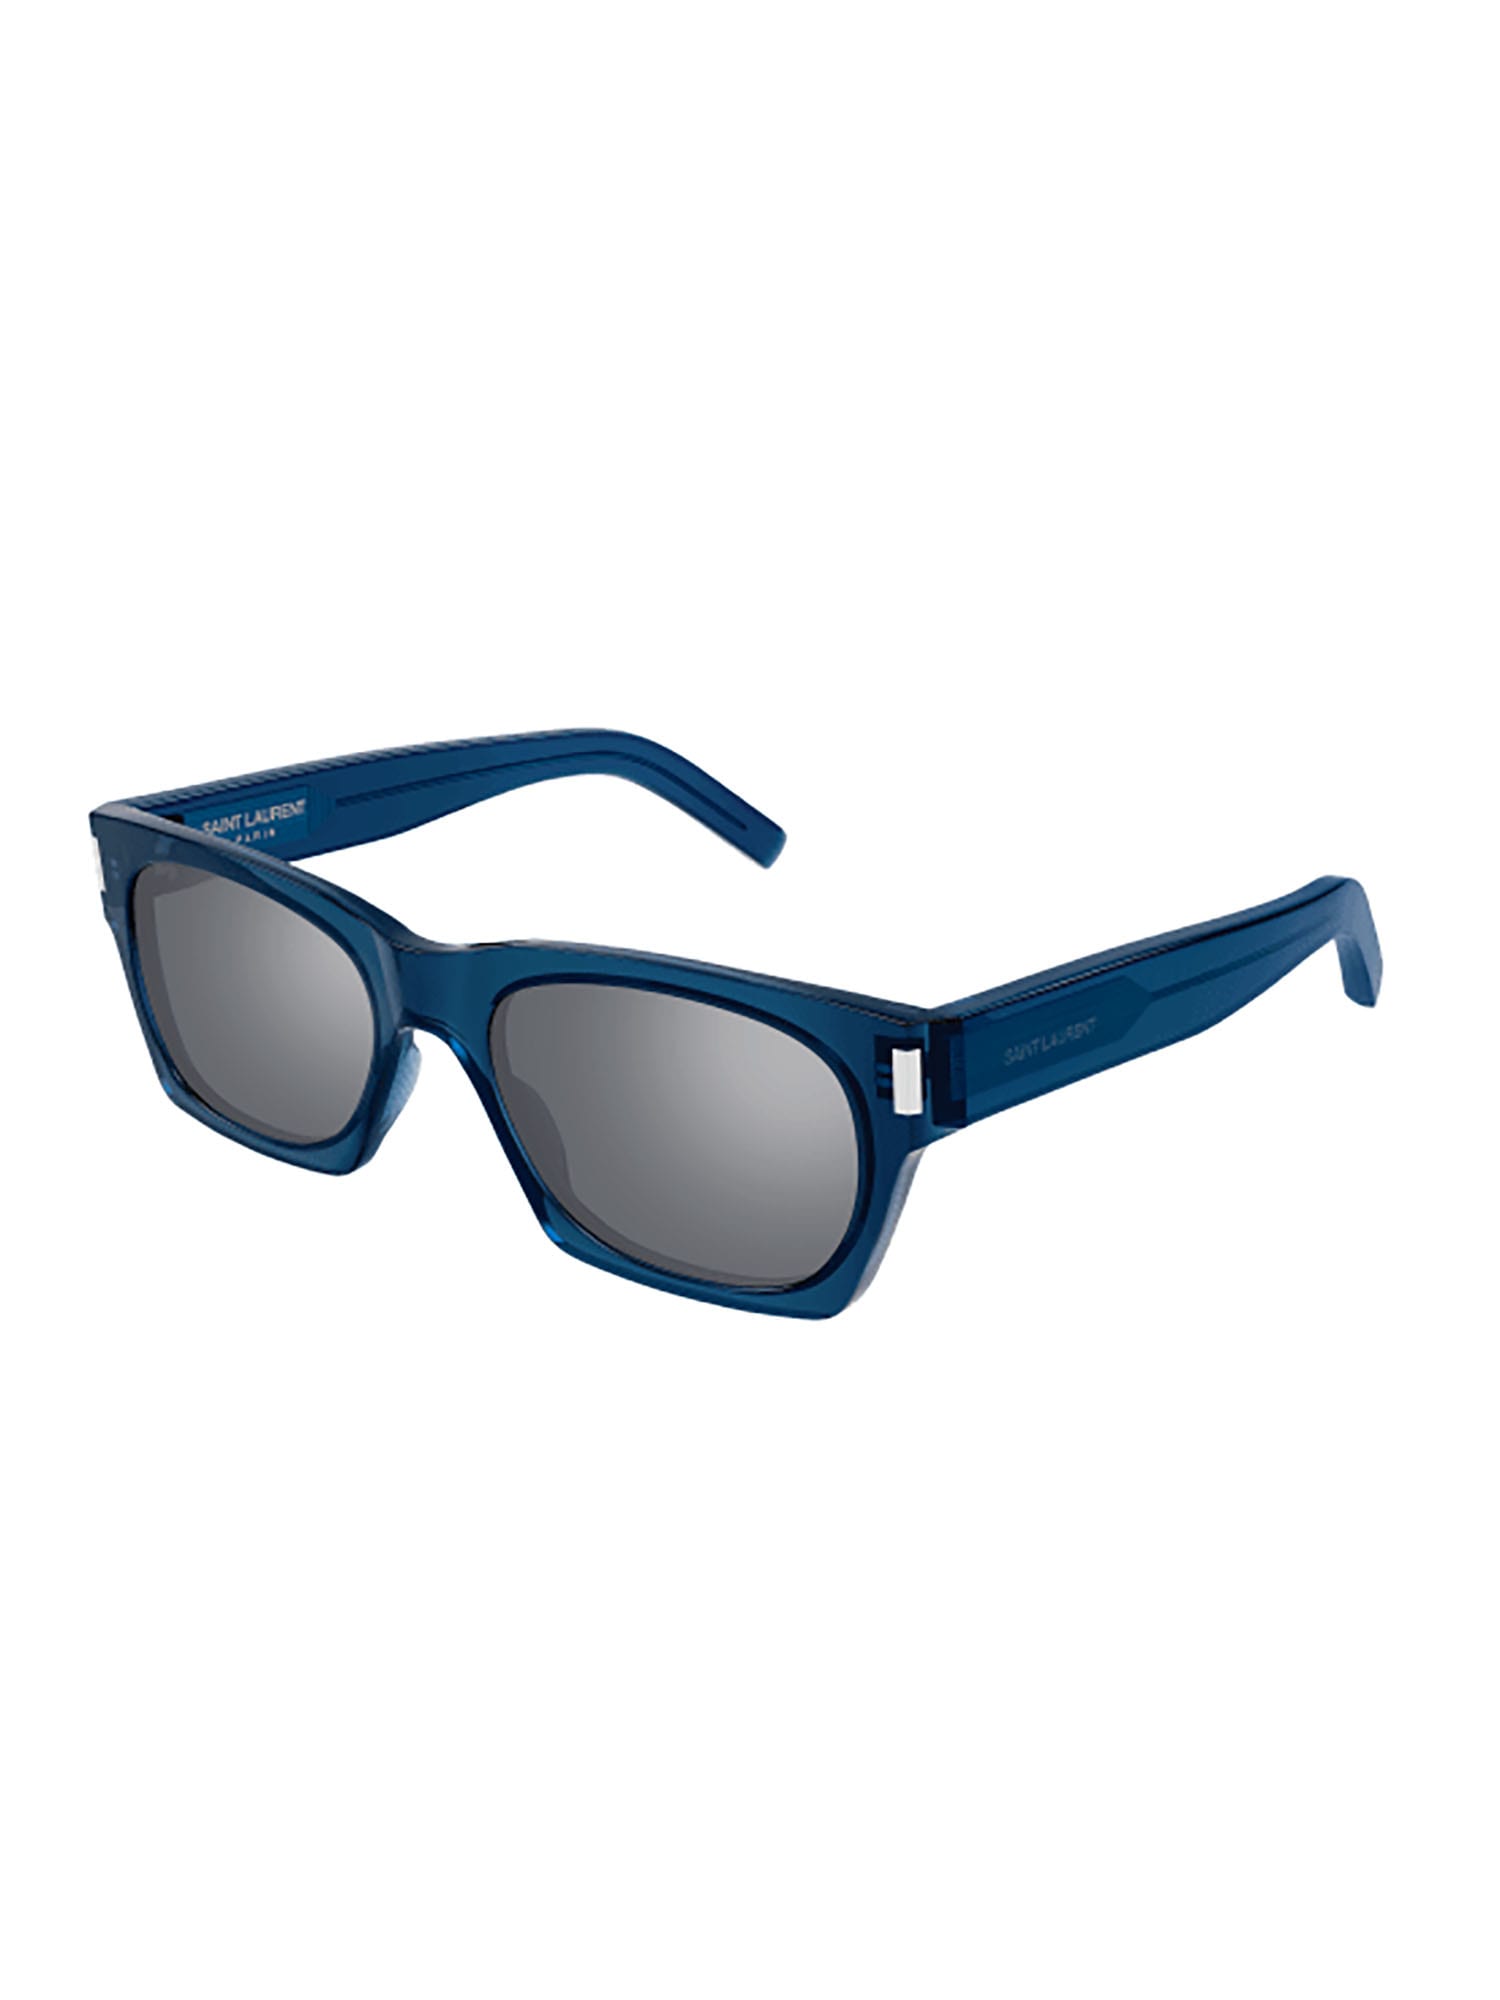 Shop Saint Laurent Sl 402 Sunglasses In Blue Blue Silver